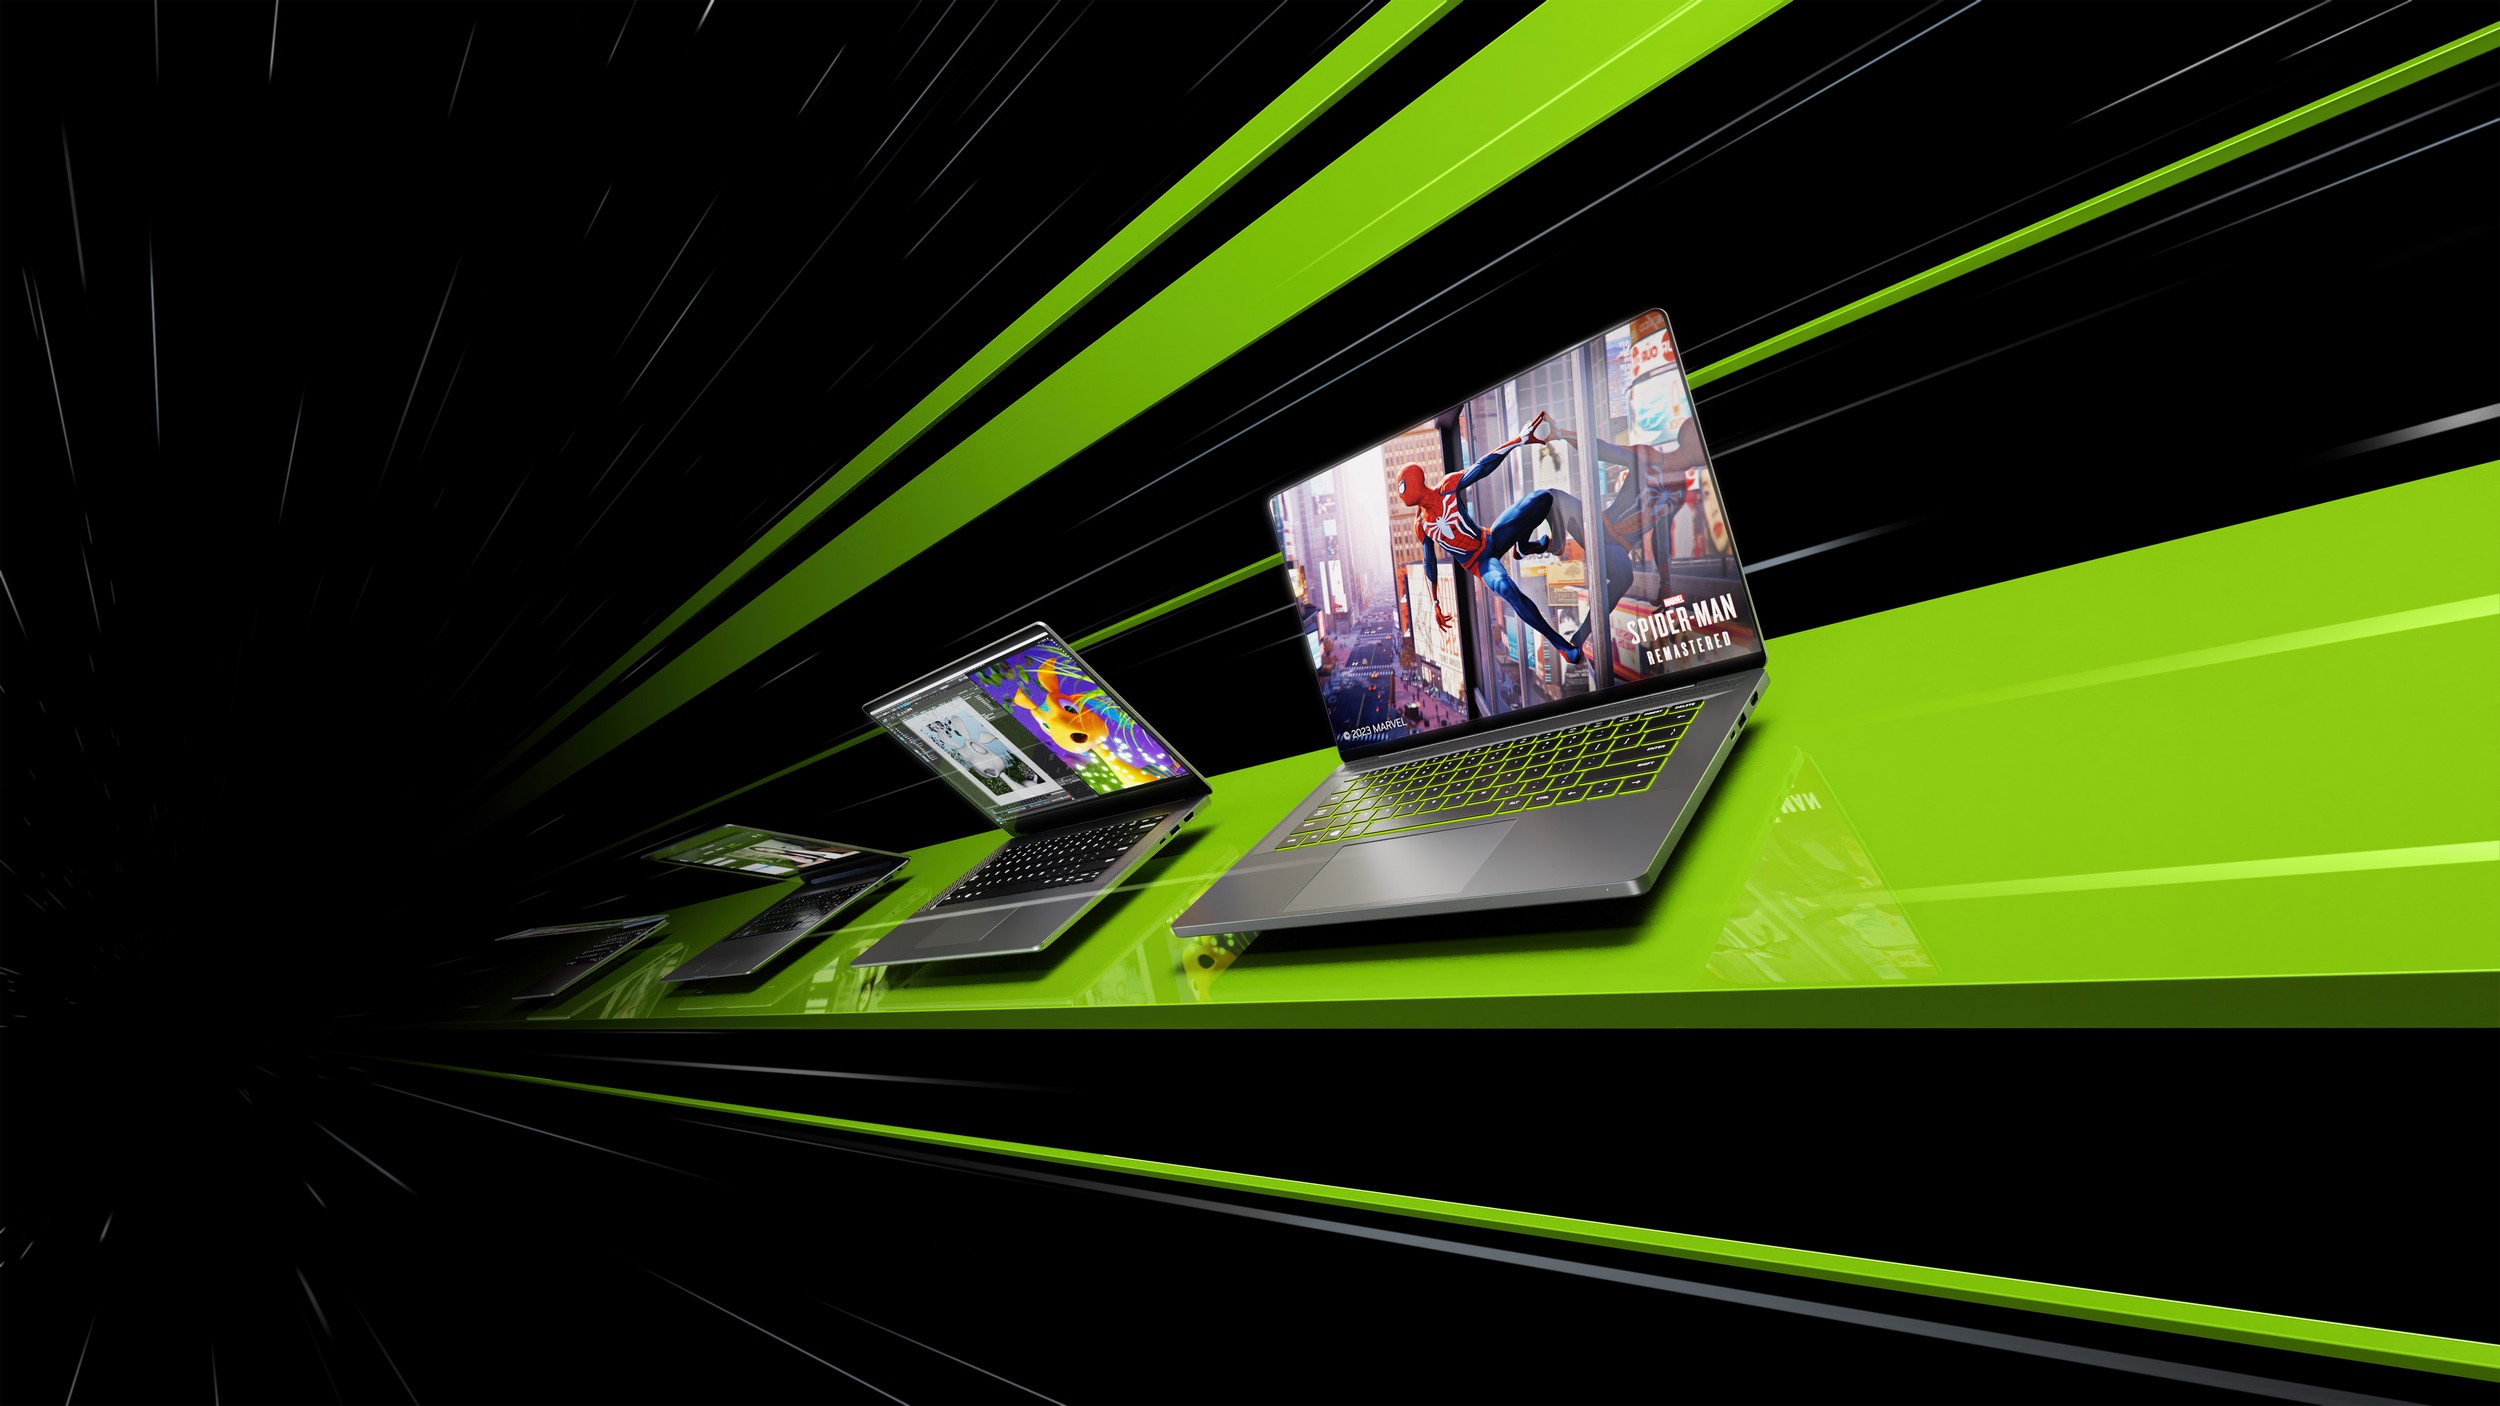 Nvidia GeForce laptops